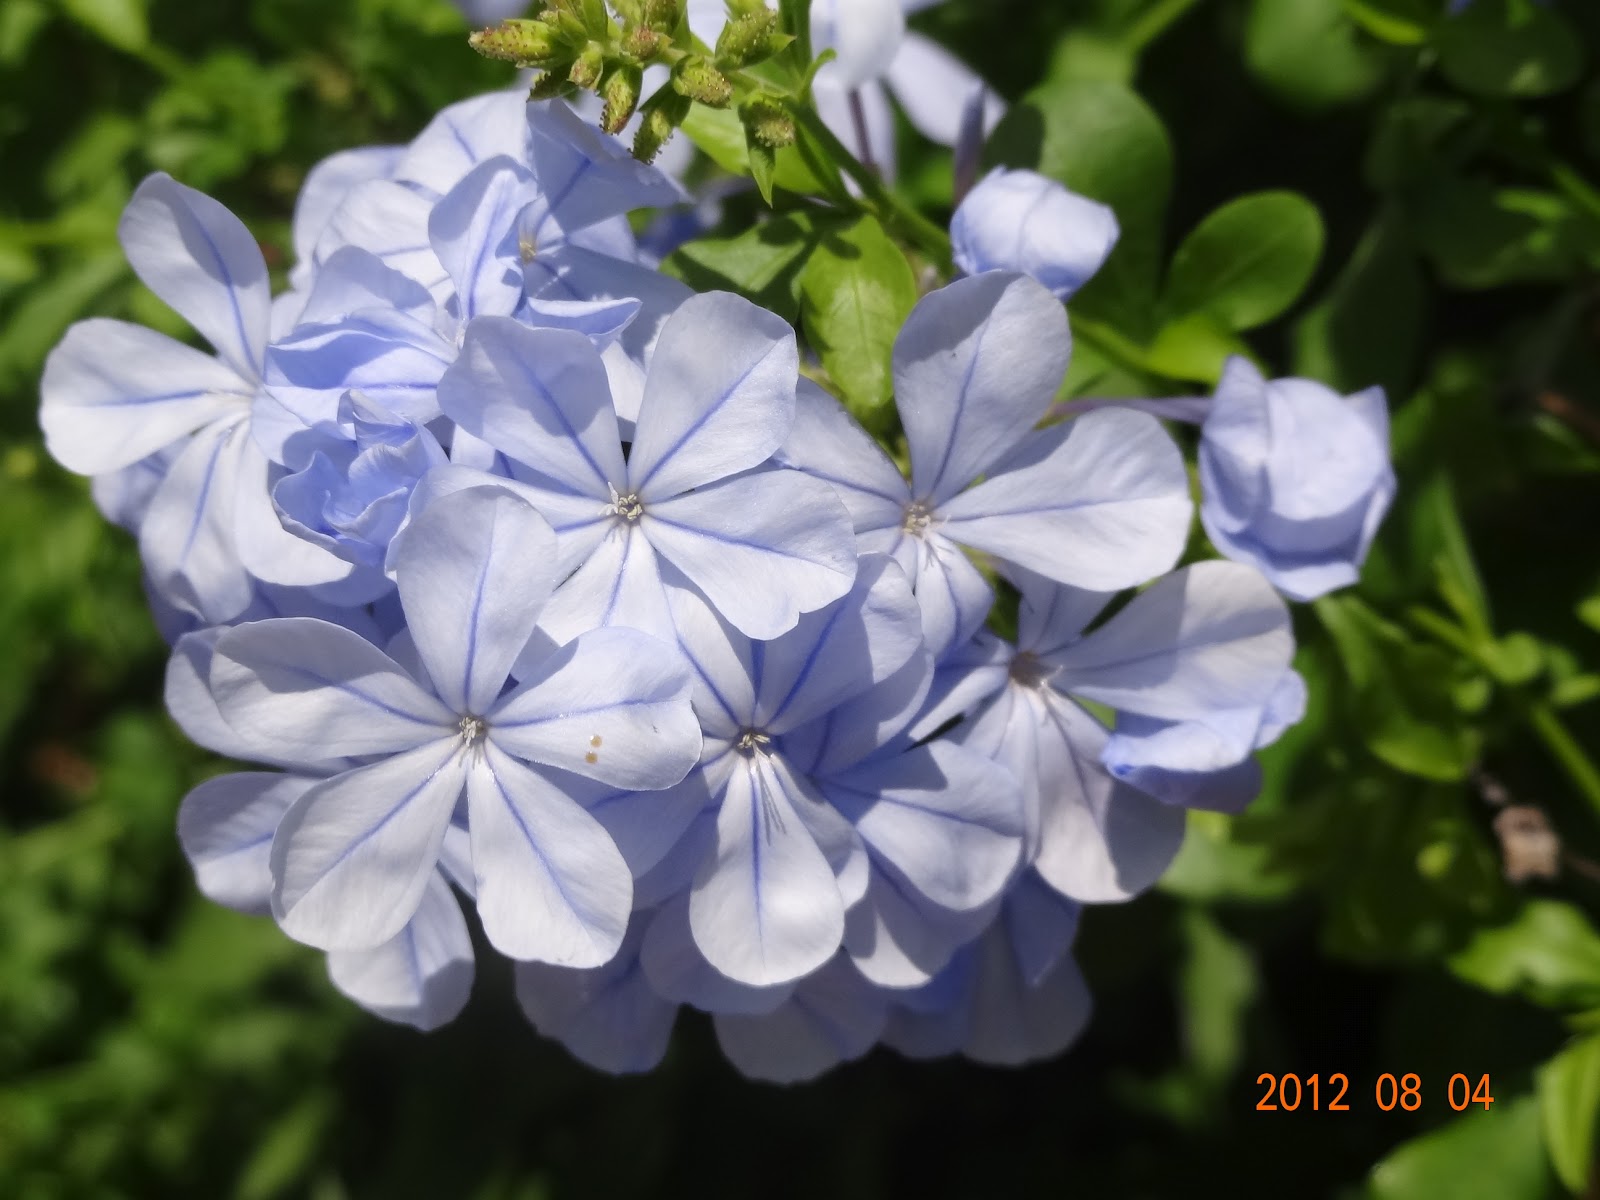 和の花だより 薄青紫色の涼しげなお花 瑠璃茉莉 るりまつり